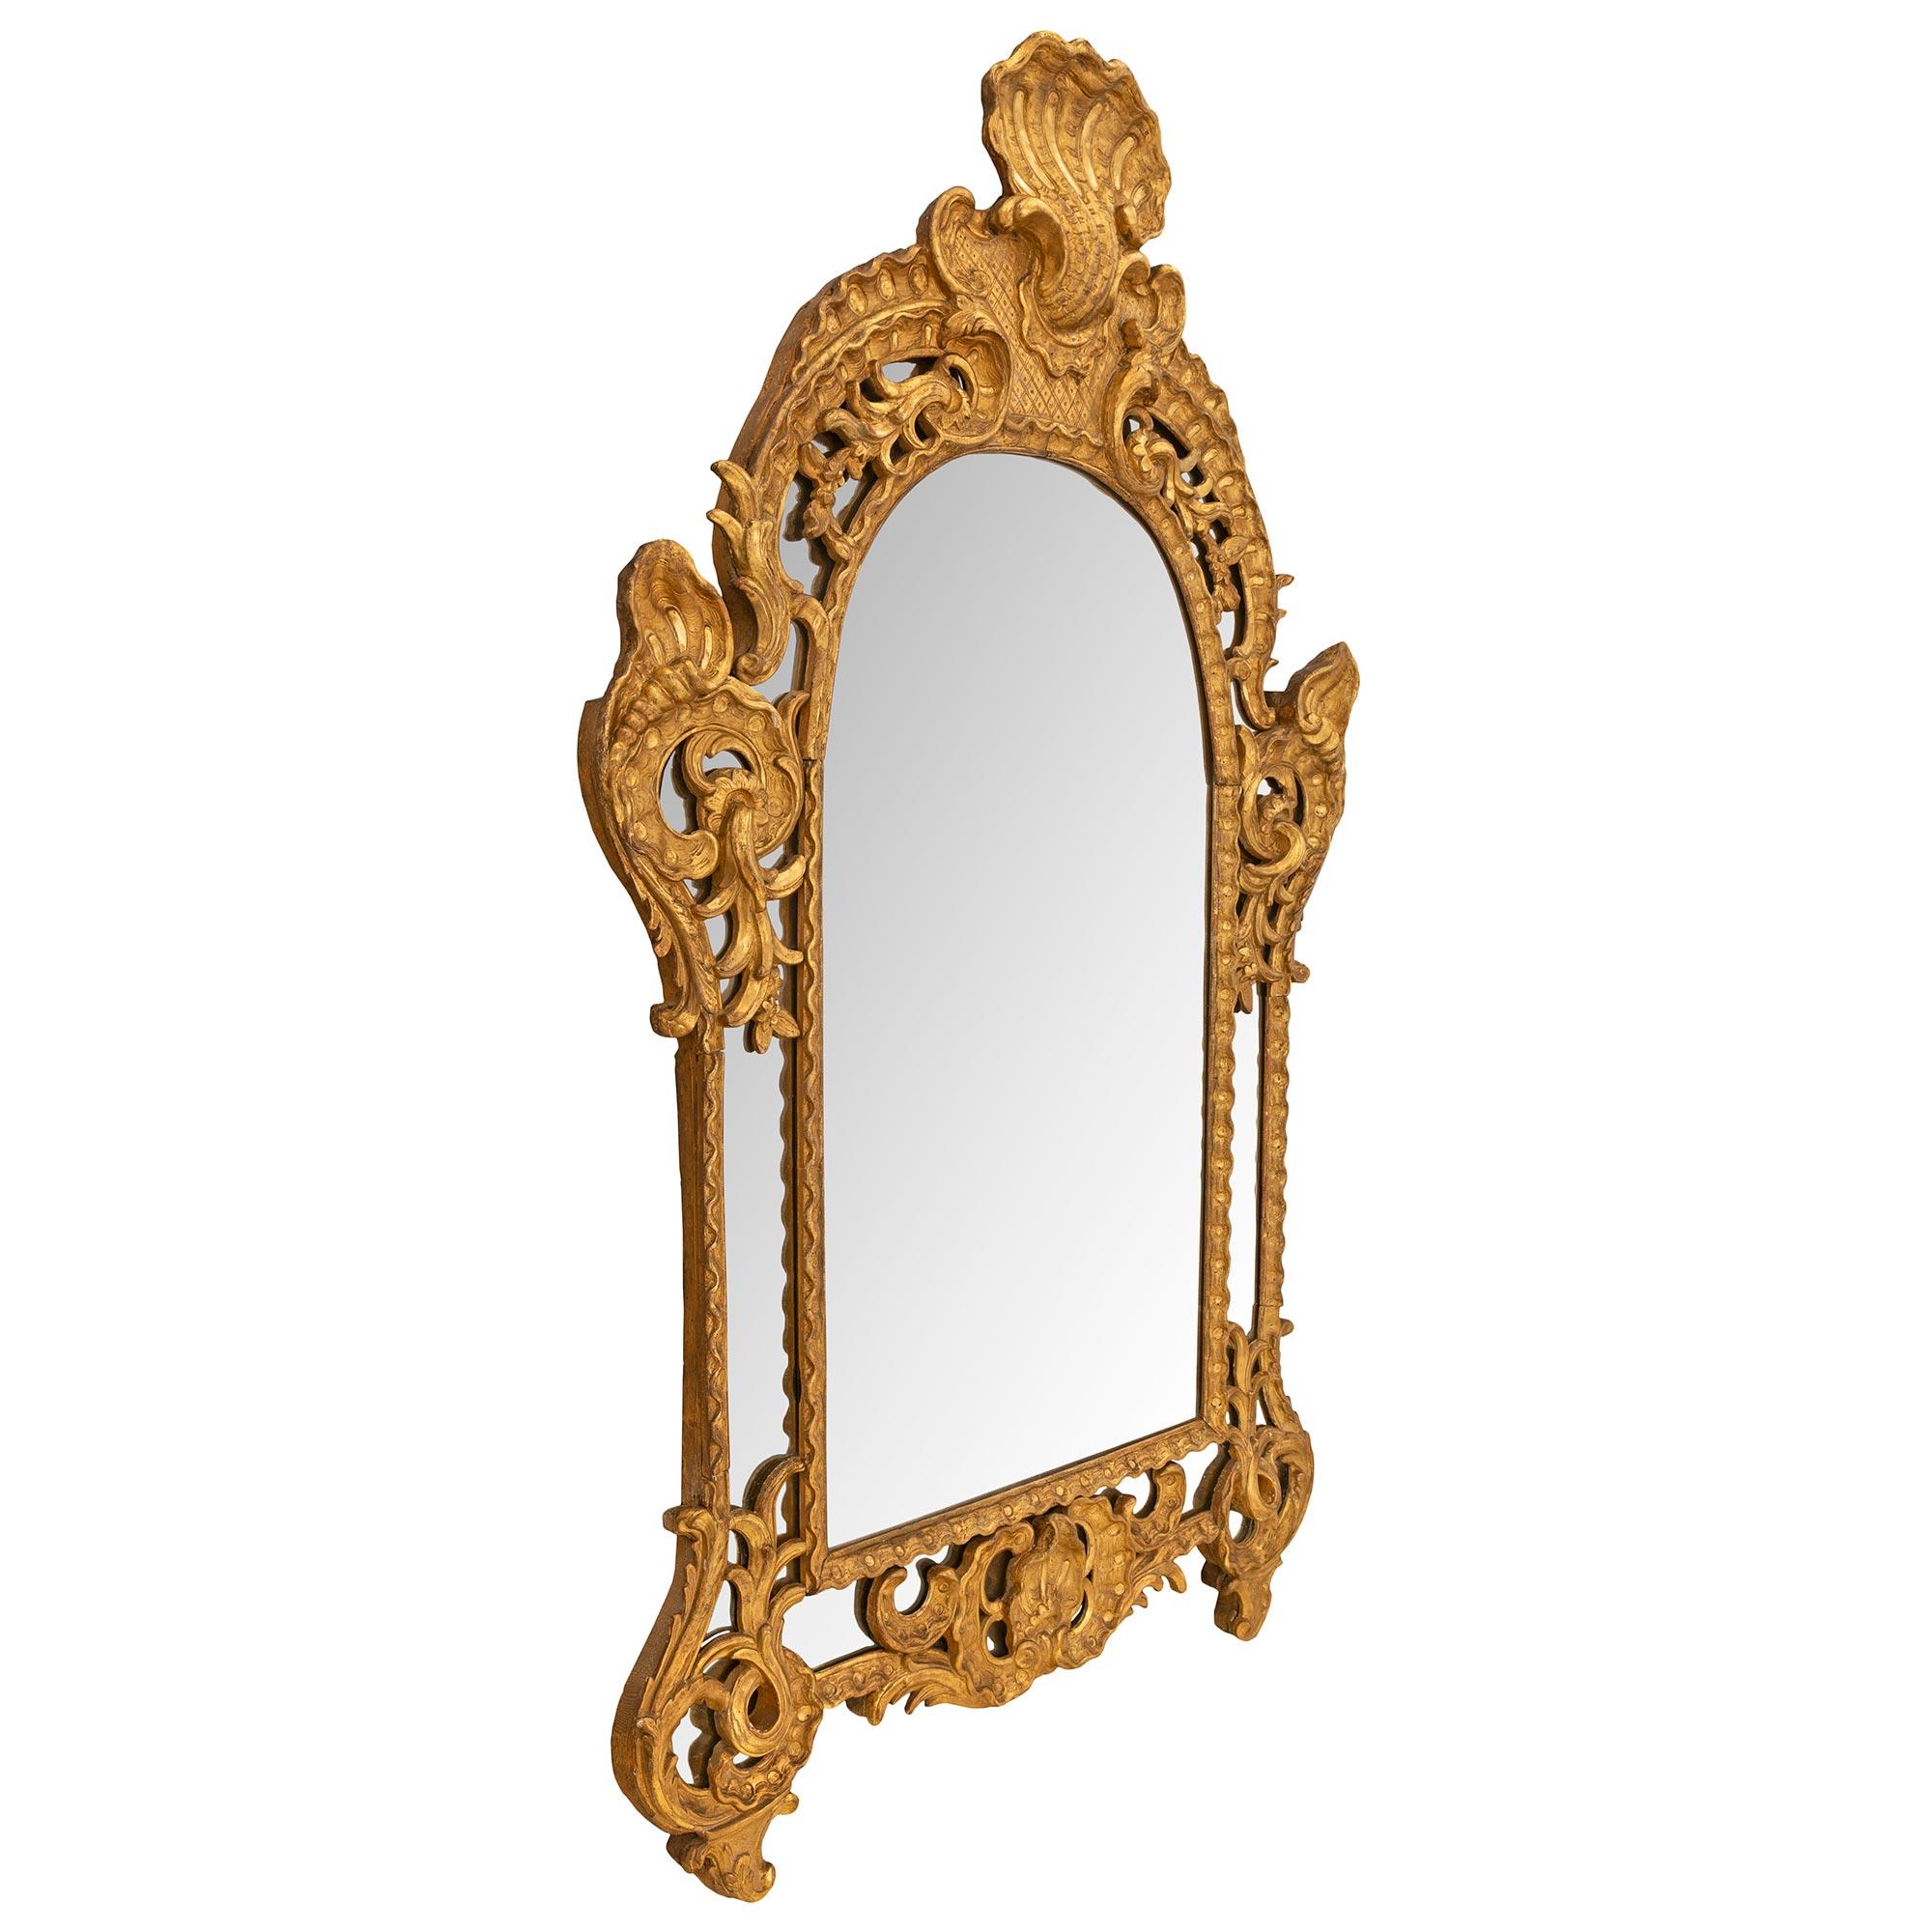 Un sensationnel miroir à double cadre en bois doré de très haute qualité, datant de la période Régence du début du XVIIIe siècle, vers 1720. Le miroir conserve toutes ses plaques de miroir d'origine, la plaque centrale étant placée dans une bordure